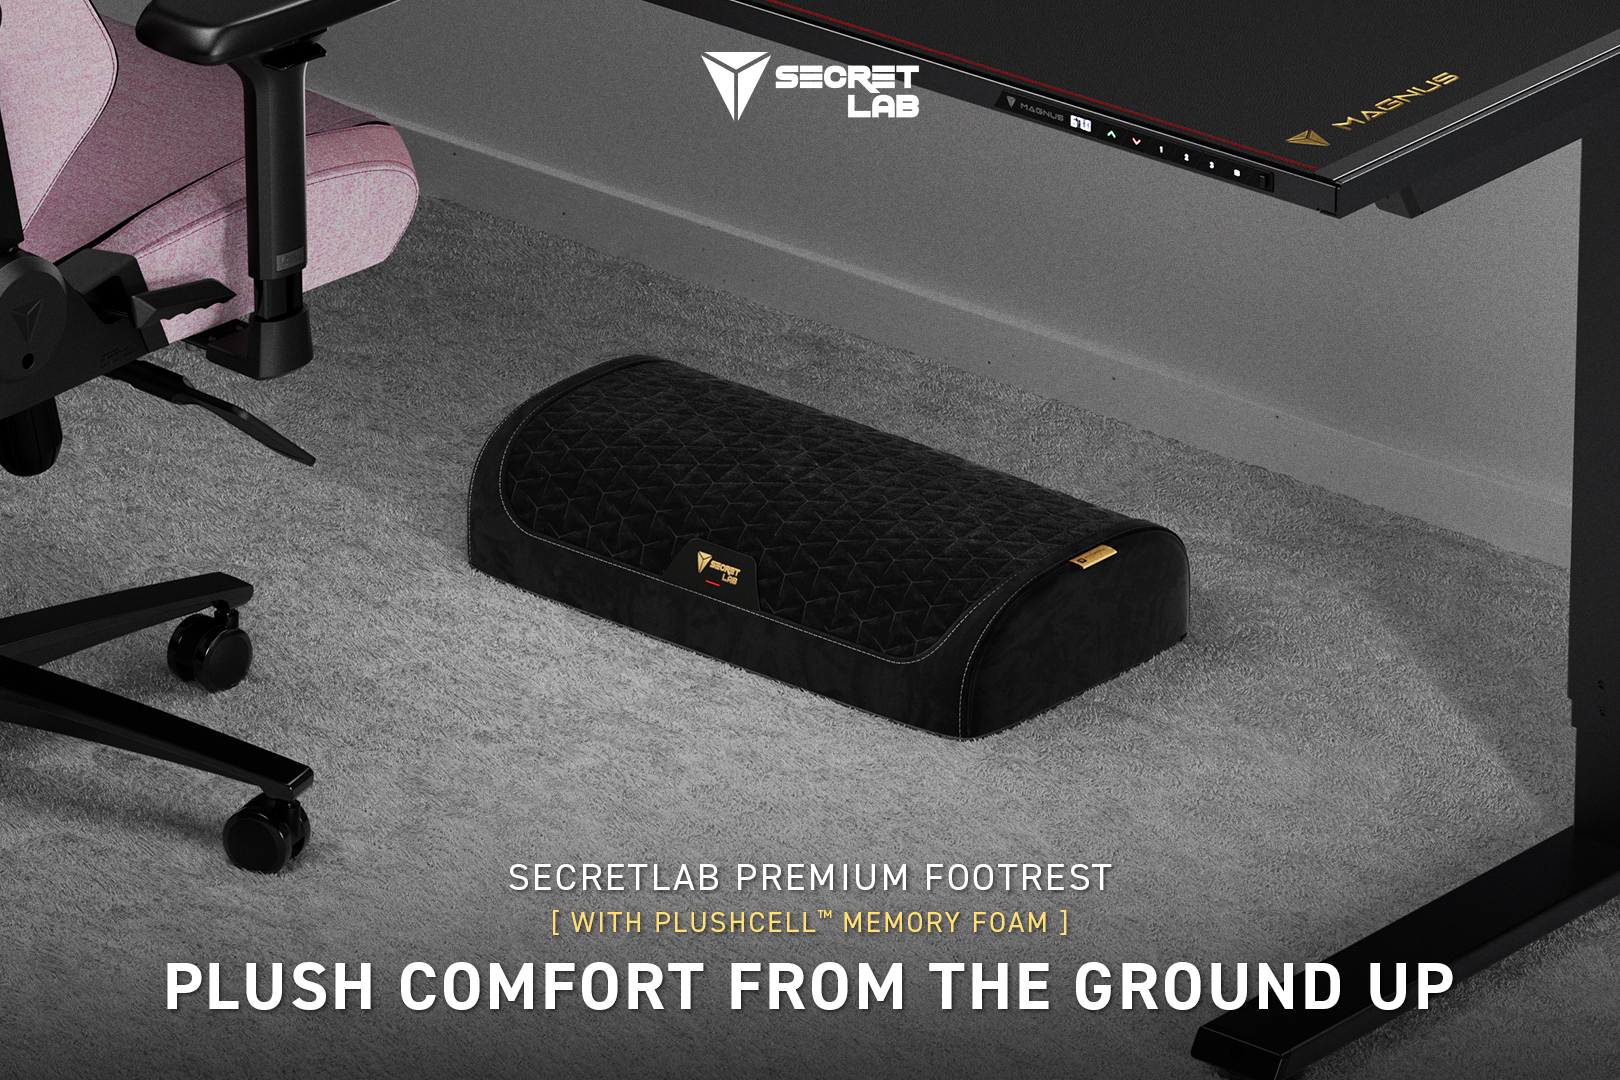 Introducing Secretlab footrests: Step up your ergonomic support